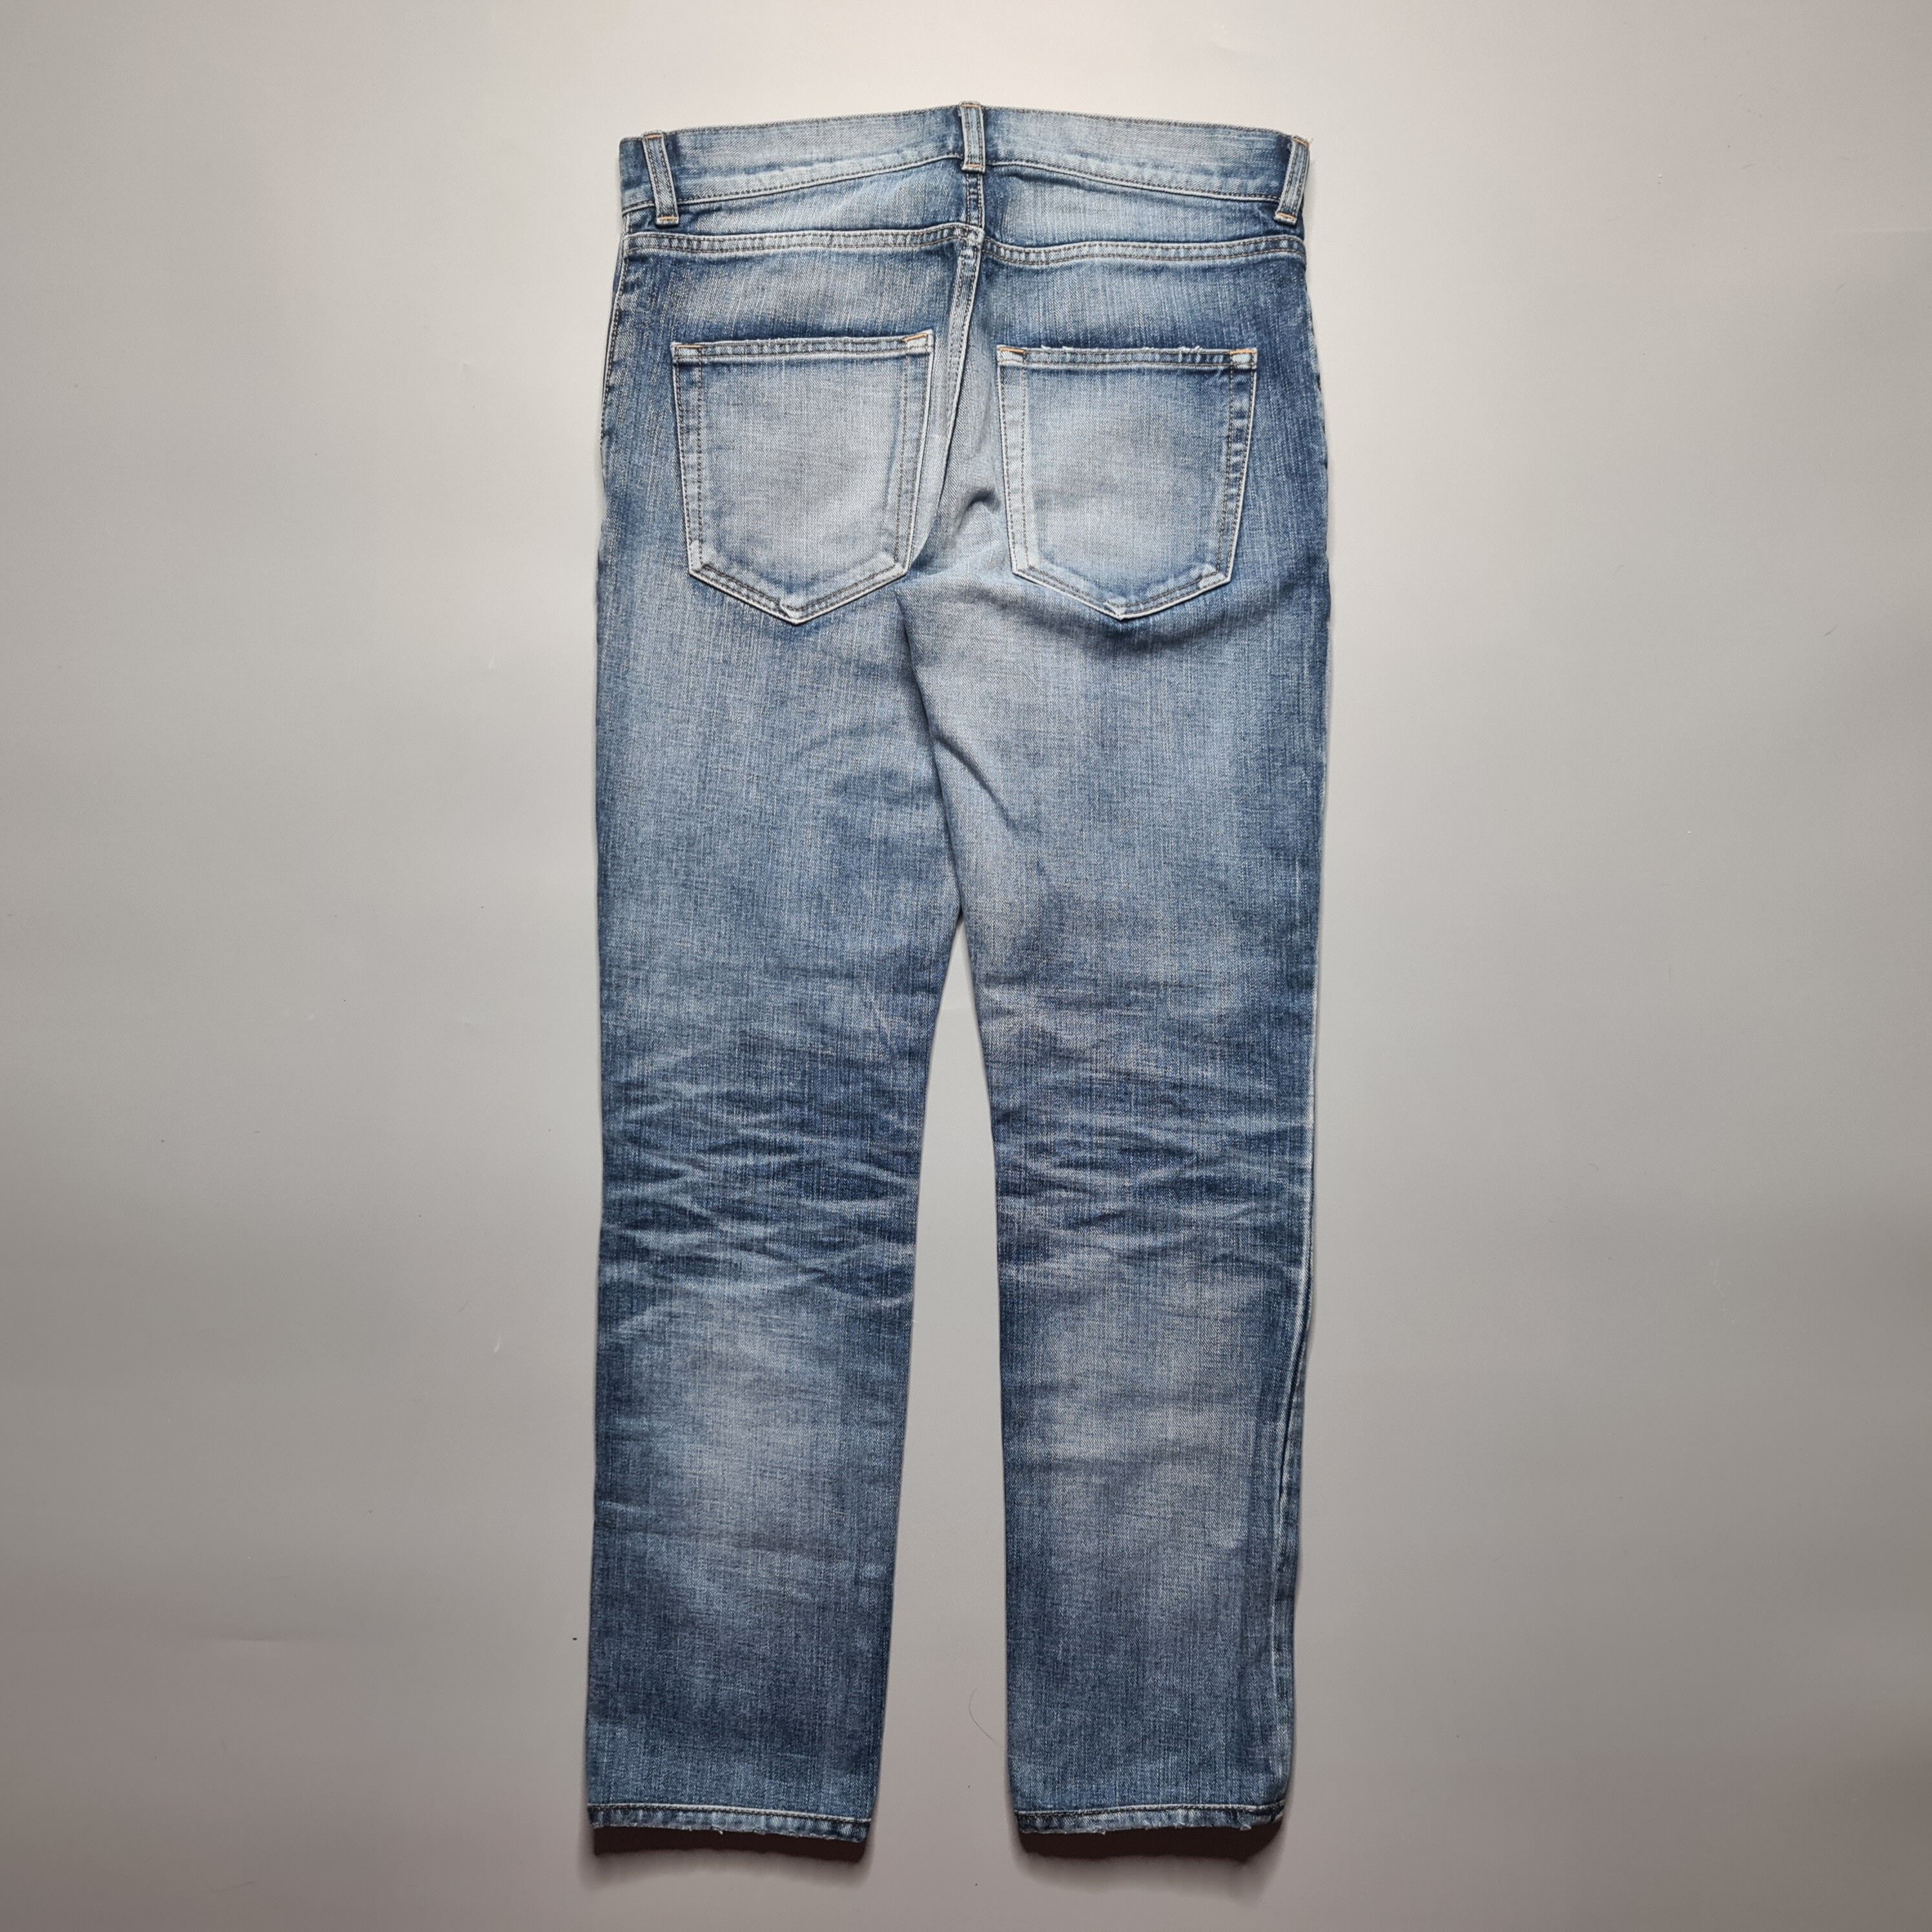 Saint Laurent Paris - AW17 D02 Blue Washed Skinny Jeans - 3